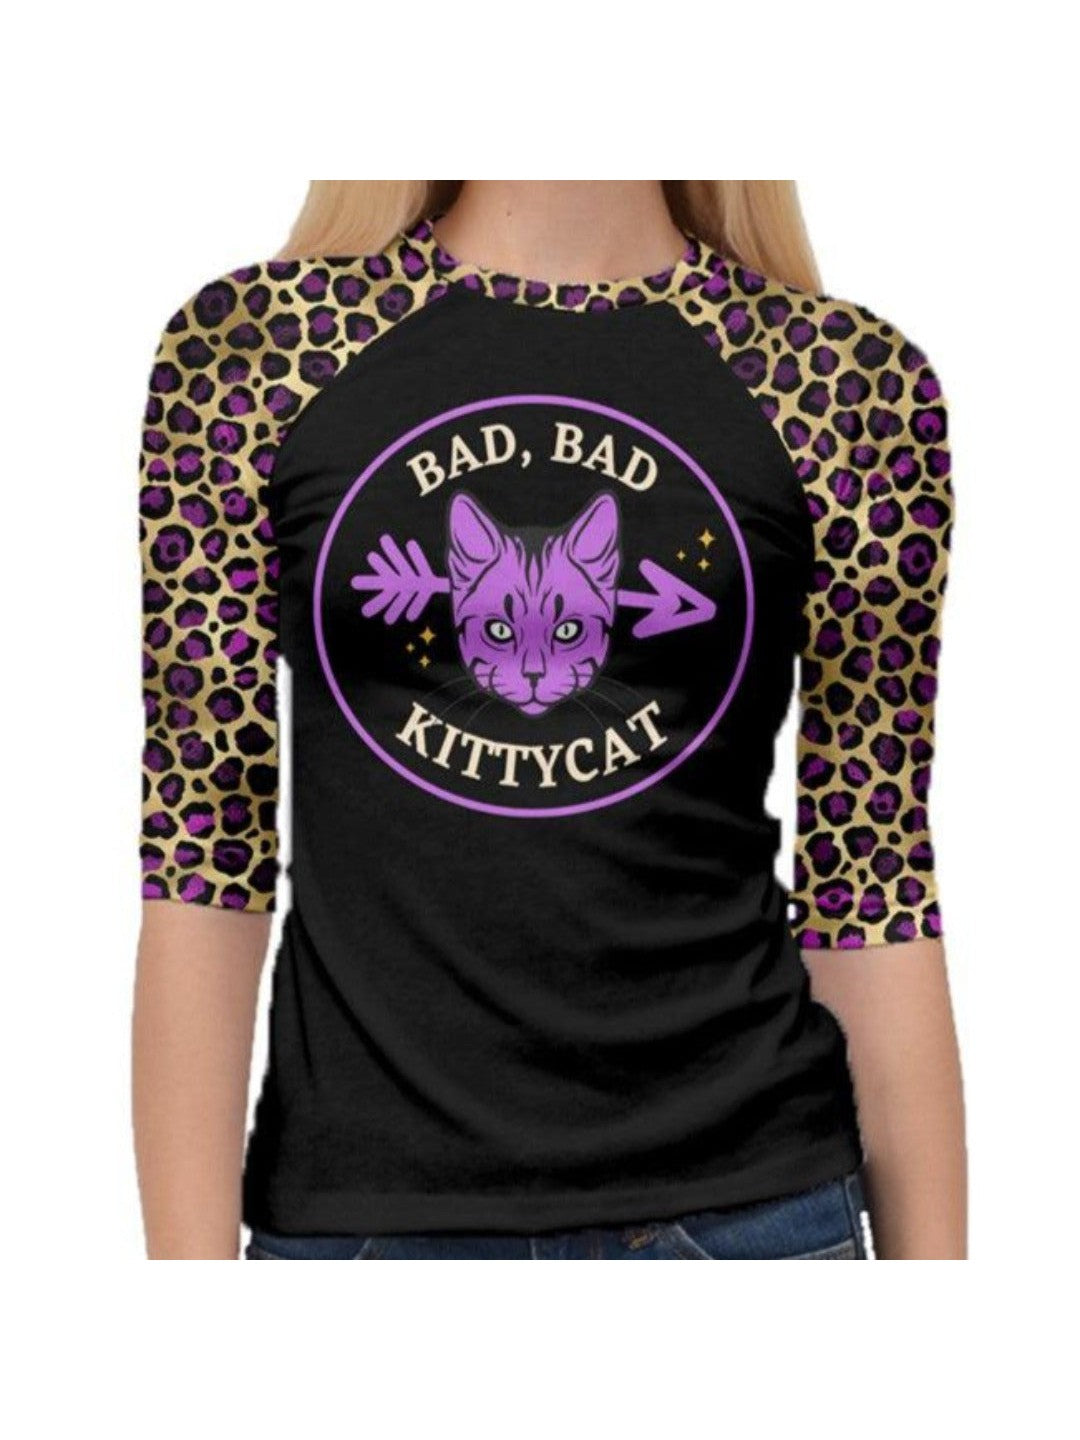 Bad Bad Kitty Cat 3/4 Raglan Tshirt